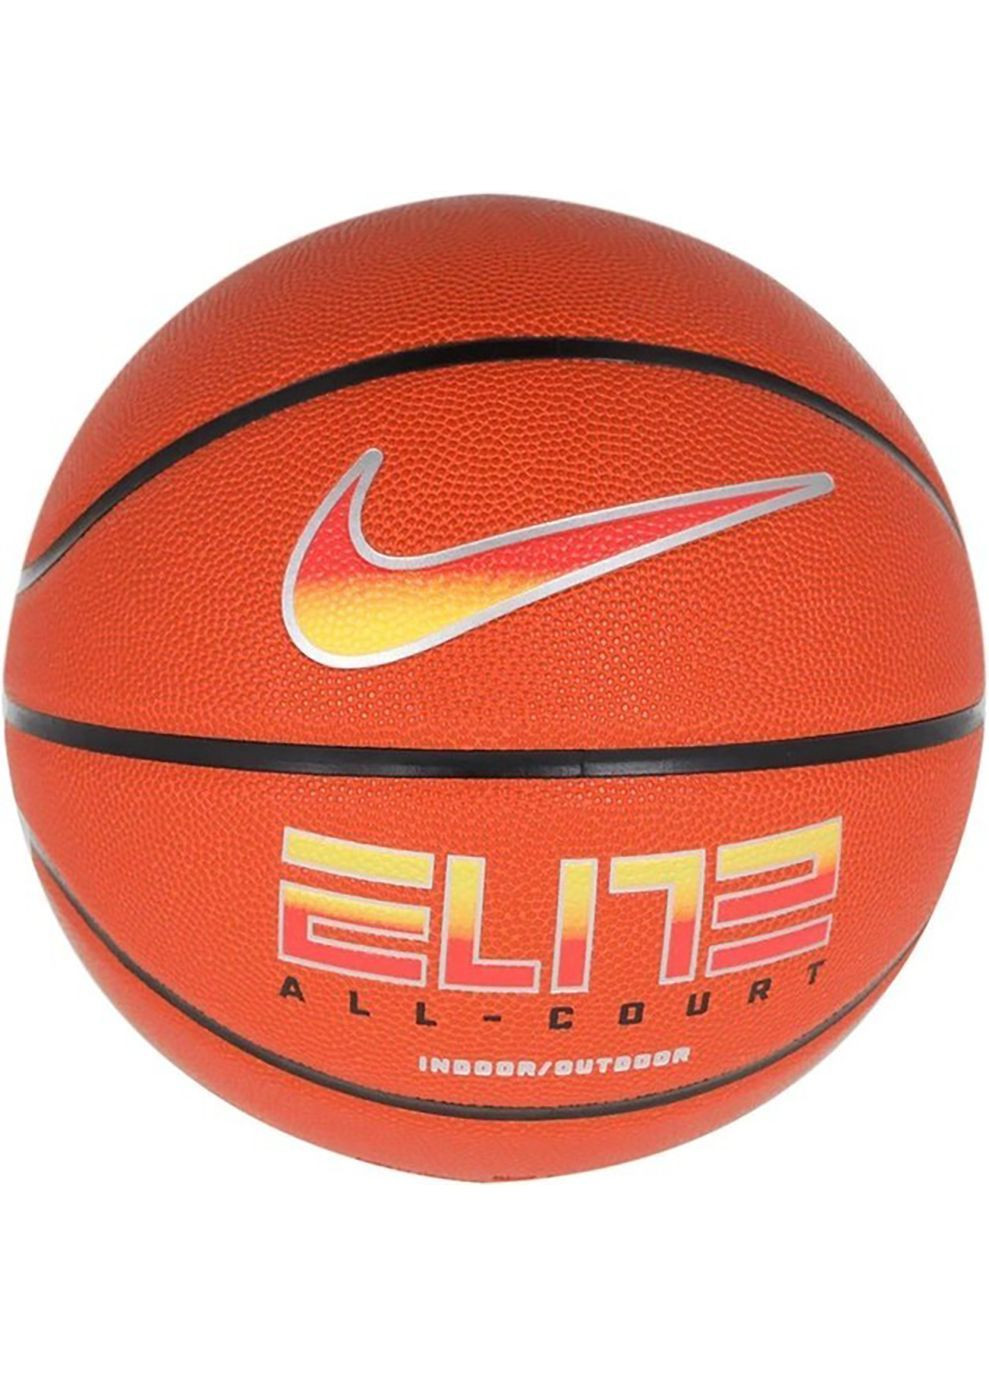 Баскетбольный Мяч ELITE ALL COURT 8P 2.0 DEFLATED оранжевый Уни 7 Nike (282317873)